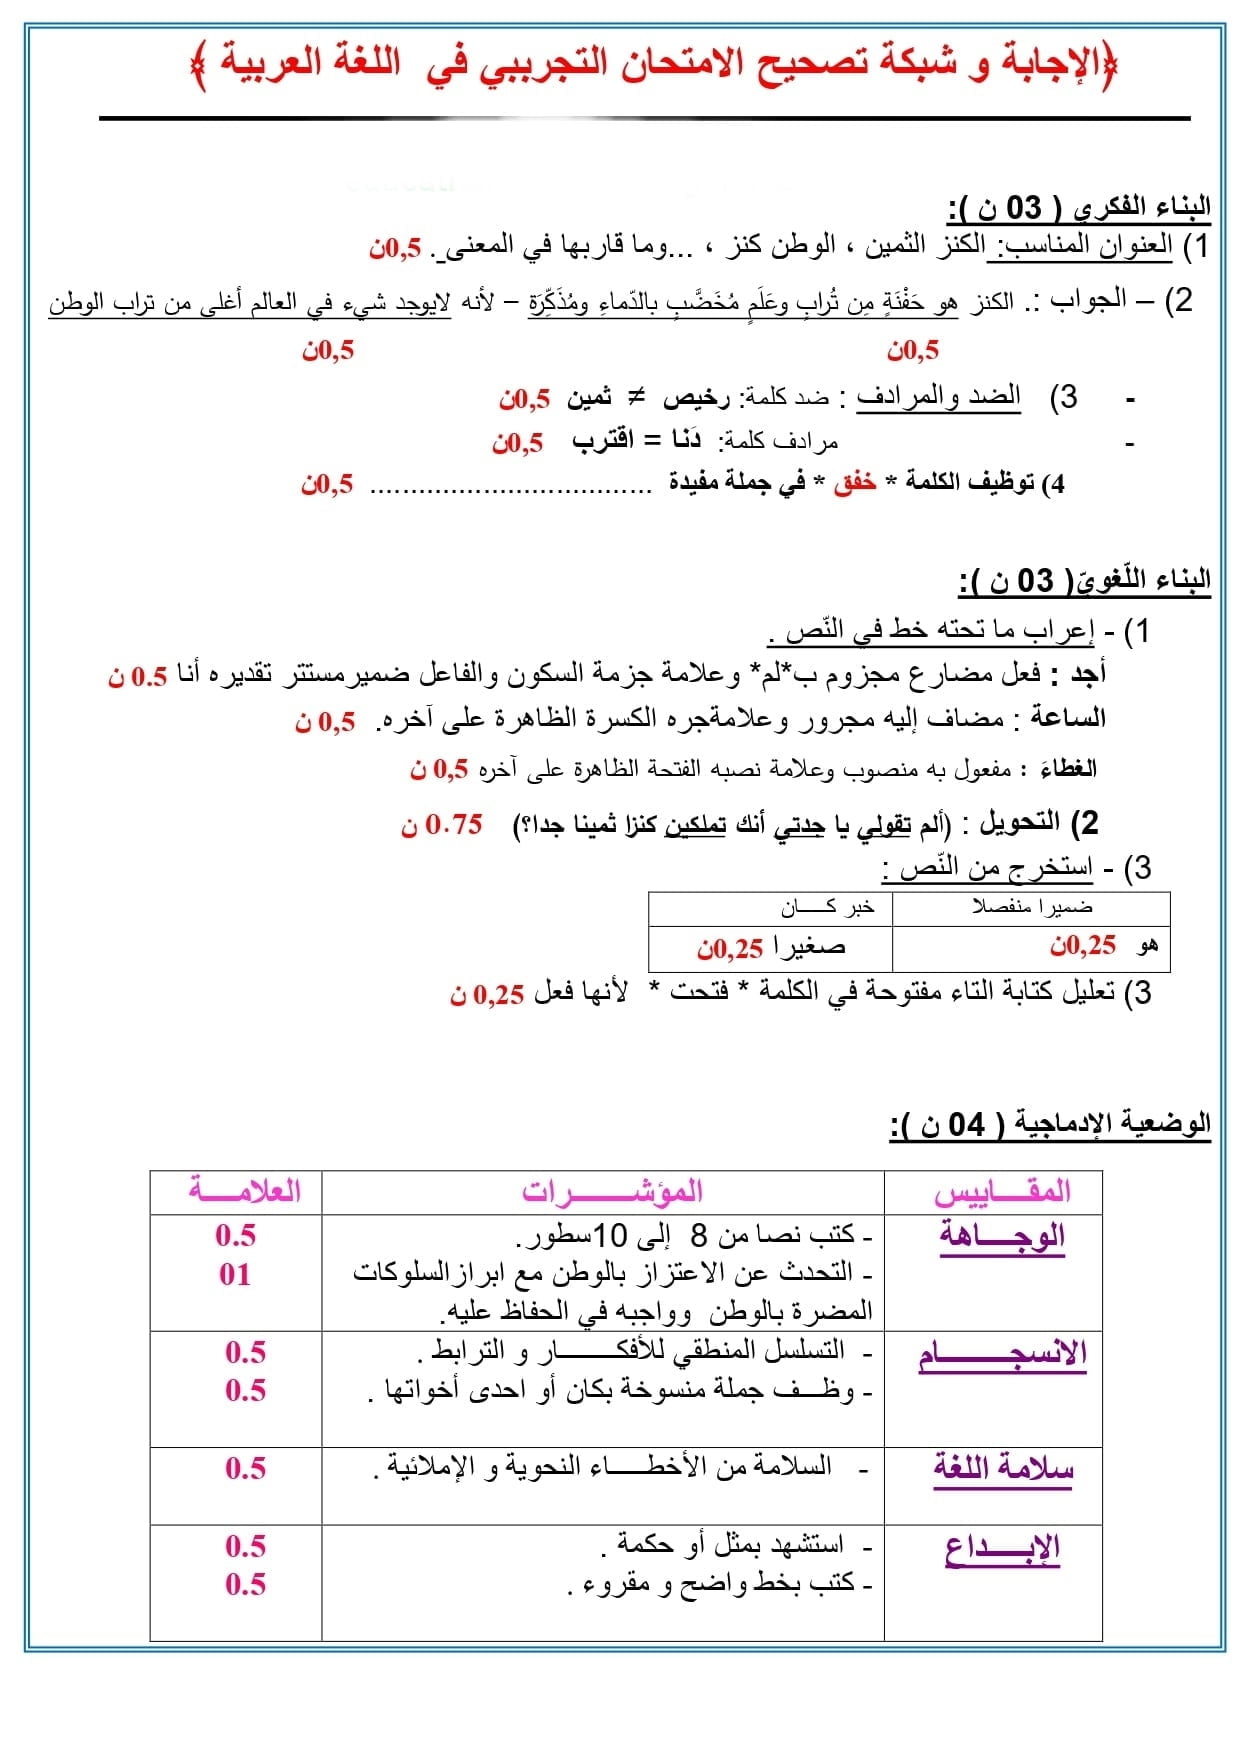 موضوع رقم 1 مقترح مع الحل في مادة اللغة العربية لامتحان شهادة التعليم الابتدائي 2021 2